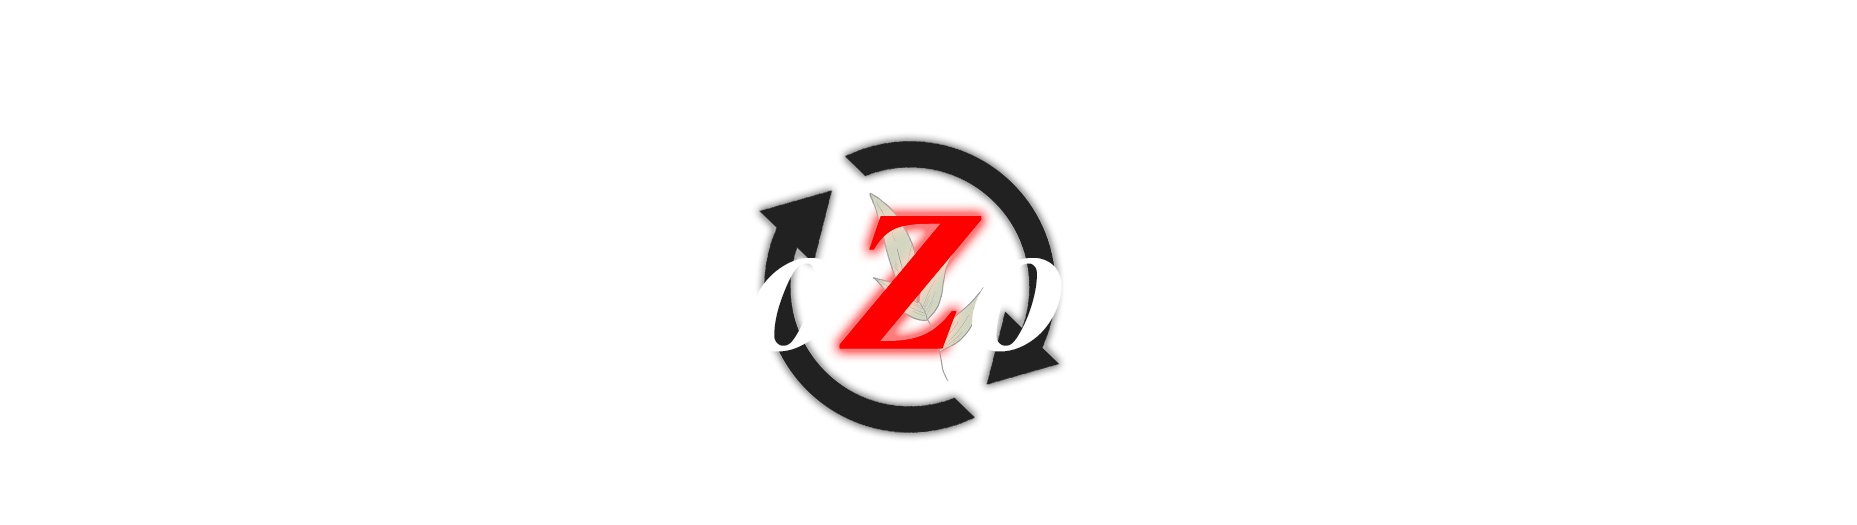 EcoZone